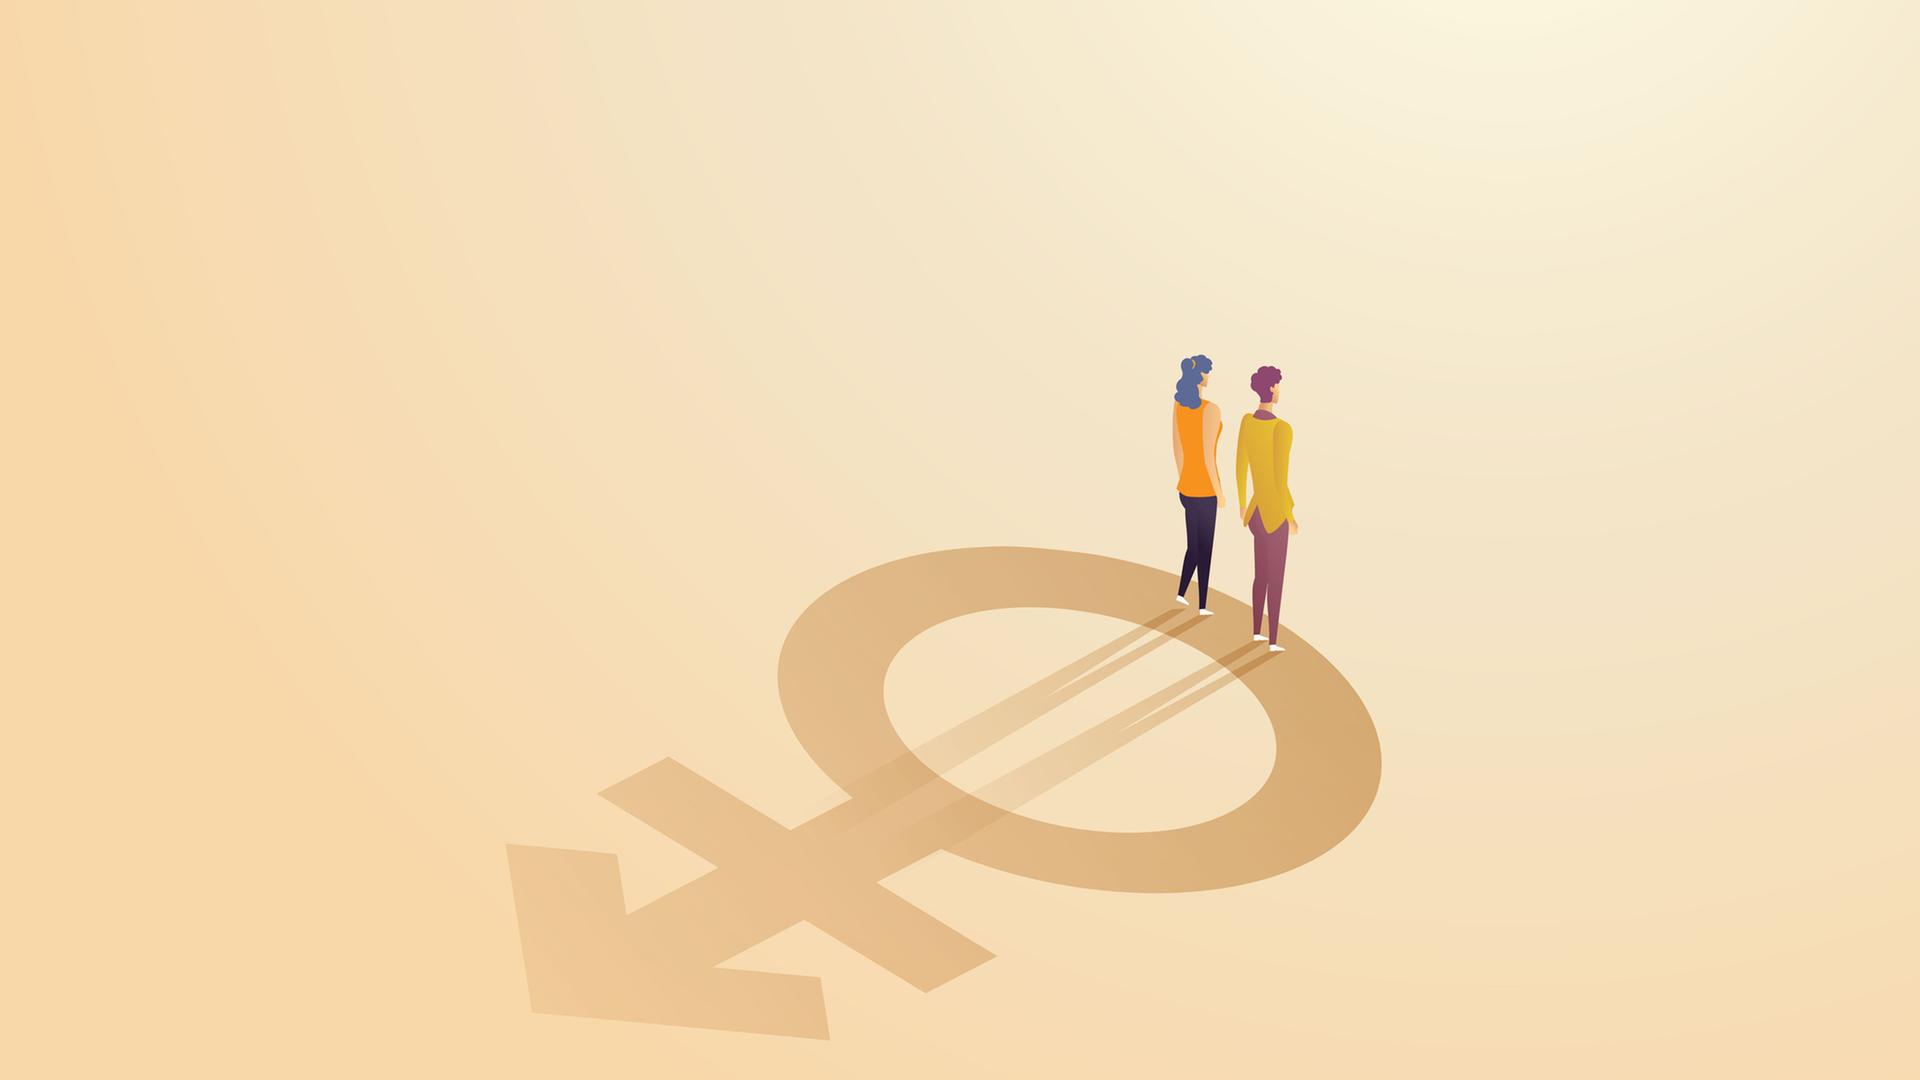 Eine Illustration in Gelbtönen zeigt eine Frau und einen Mann, deren Silhouette auf dem Symbol für nonbinäre Geschlechtsidentitäten stehen. 